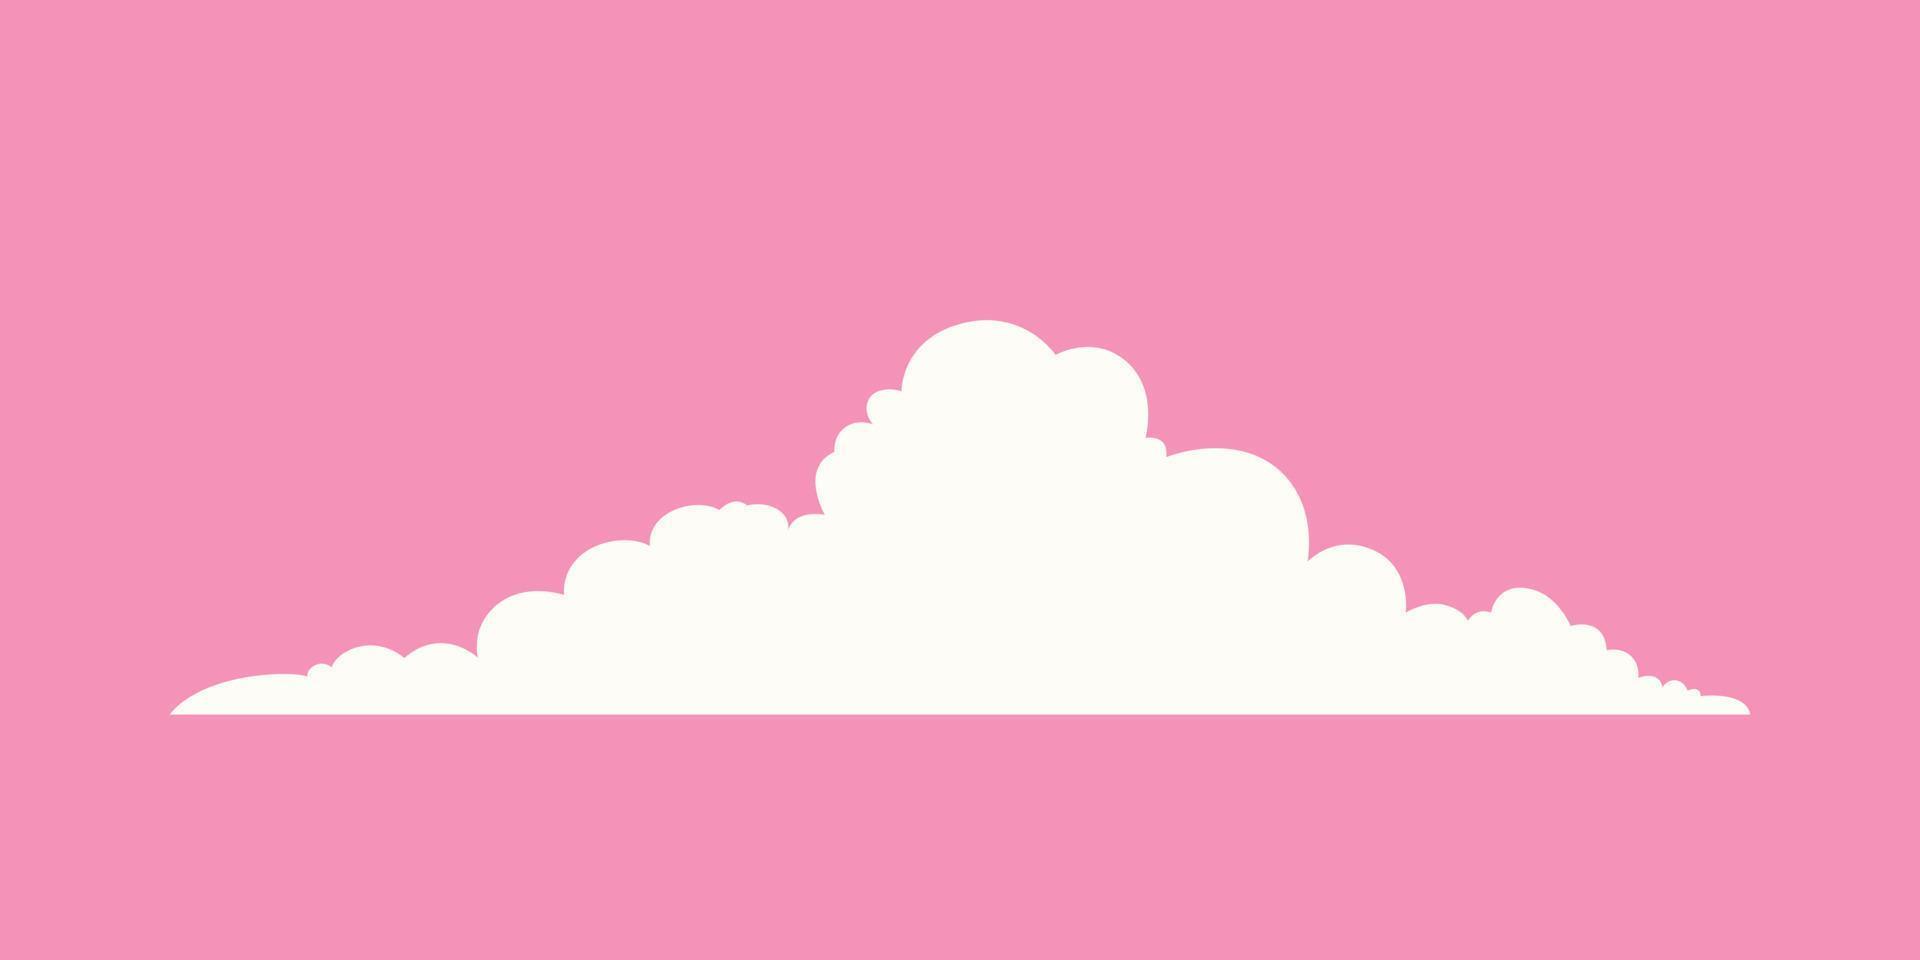 nuvola di cartone animato semplice isolata su sfondo rosa vettore. nuvole vettoriali realistiche dal design piatto.